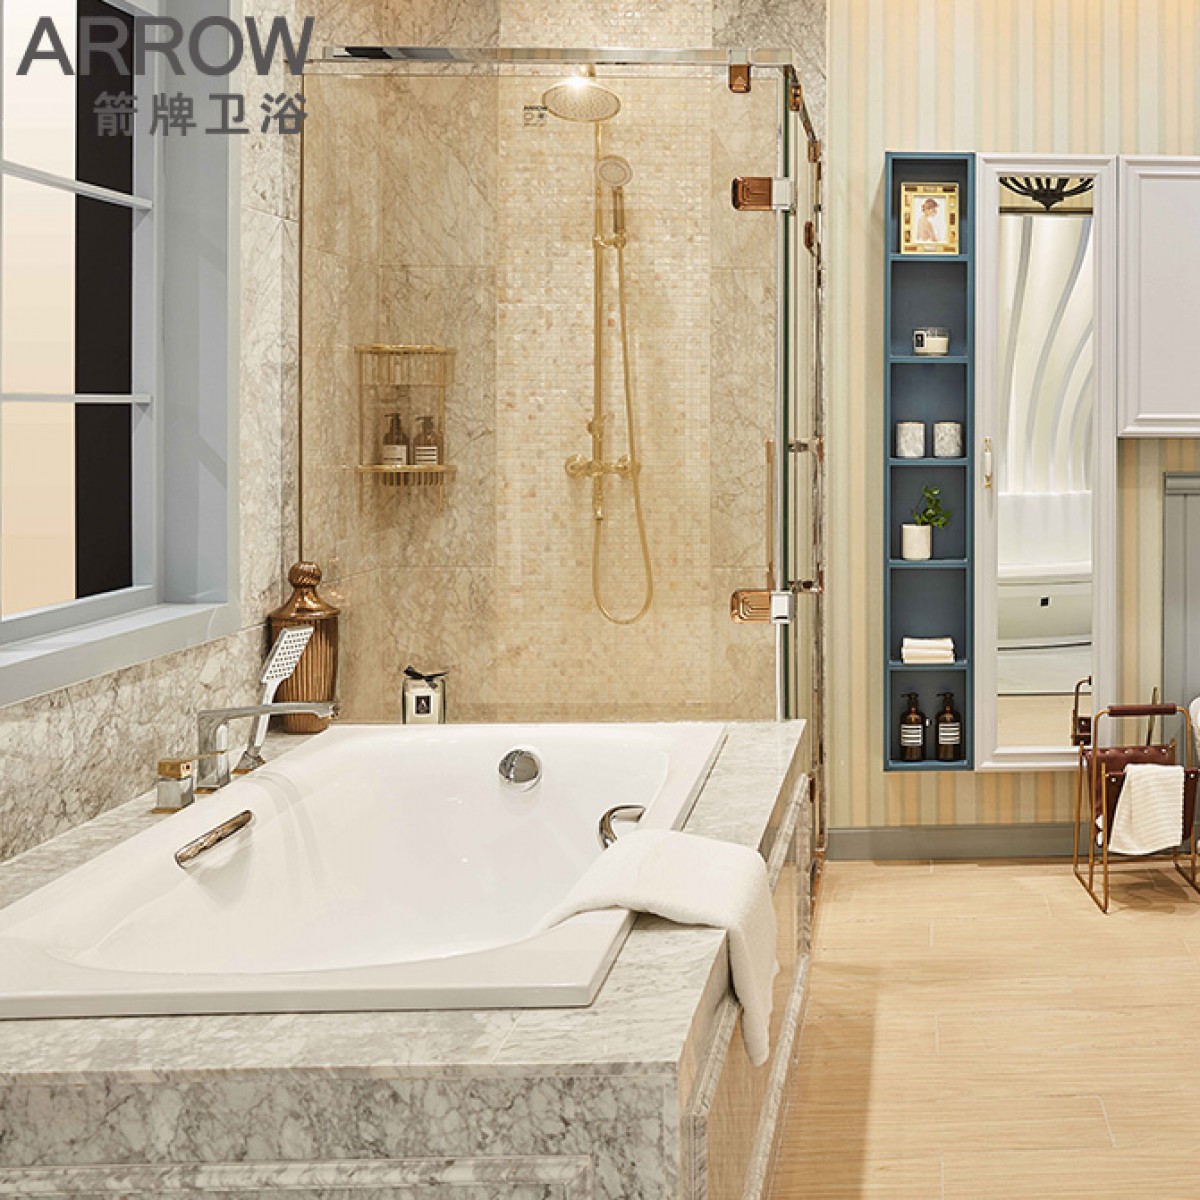 箭牌卫浴定制空间系列阿曼达浅系恬静小美风格创意定制浴室